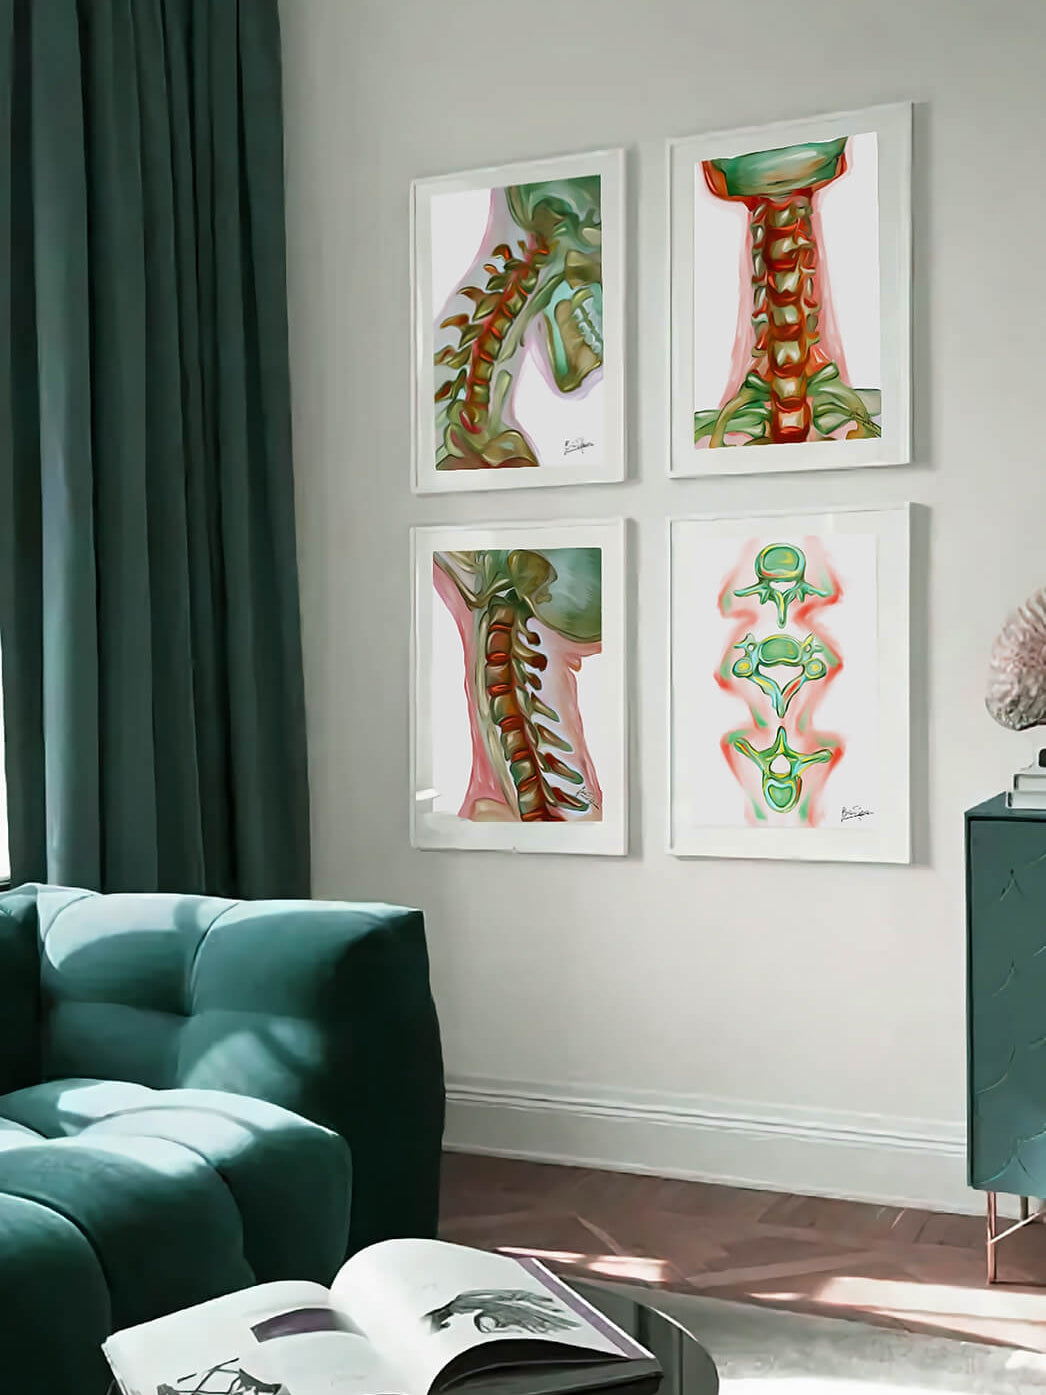 Spine anatomy artwork